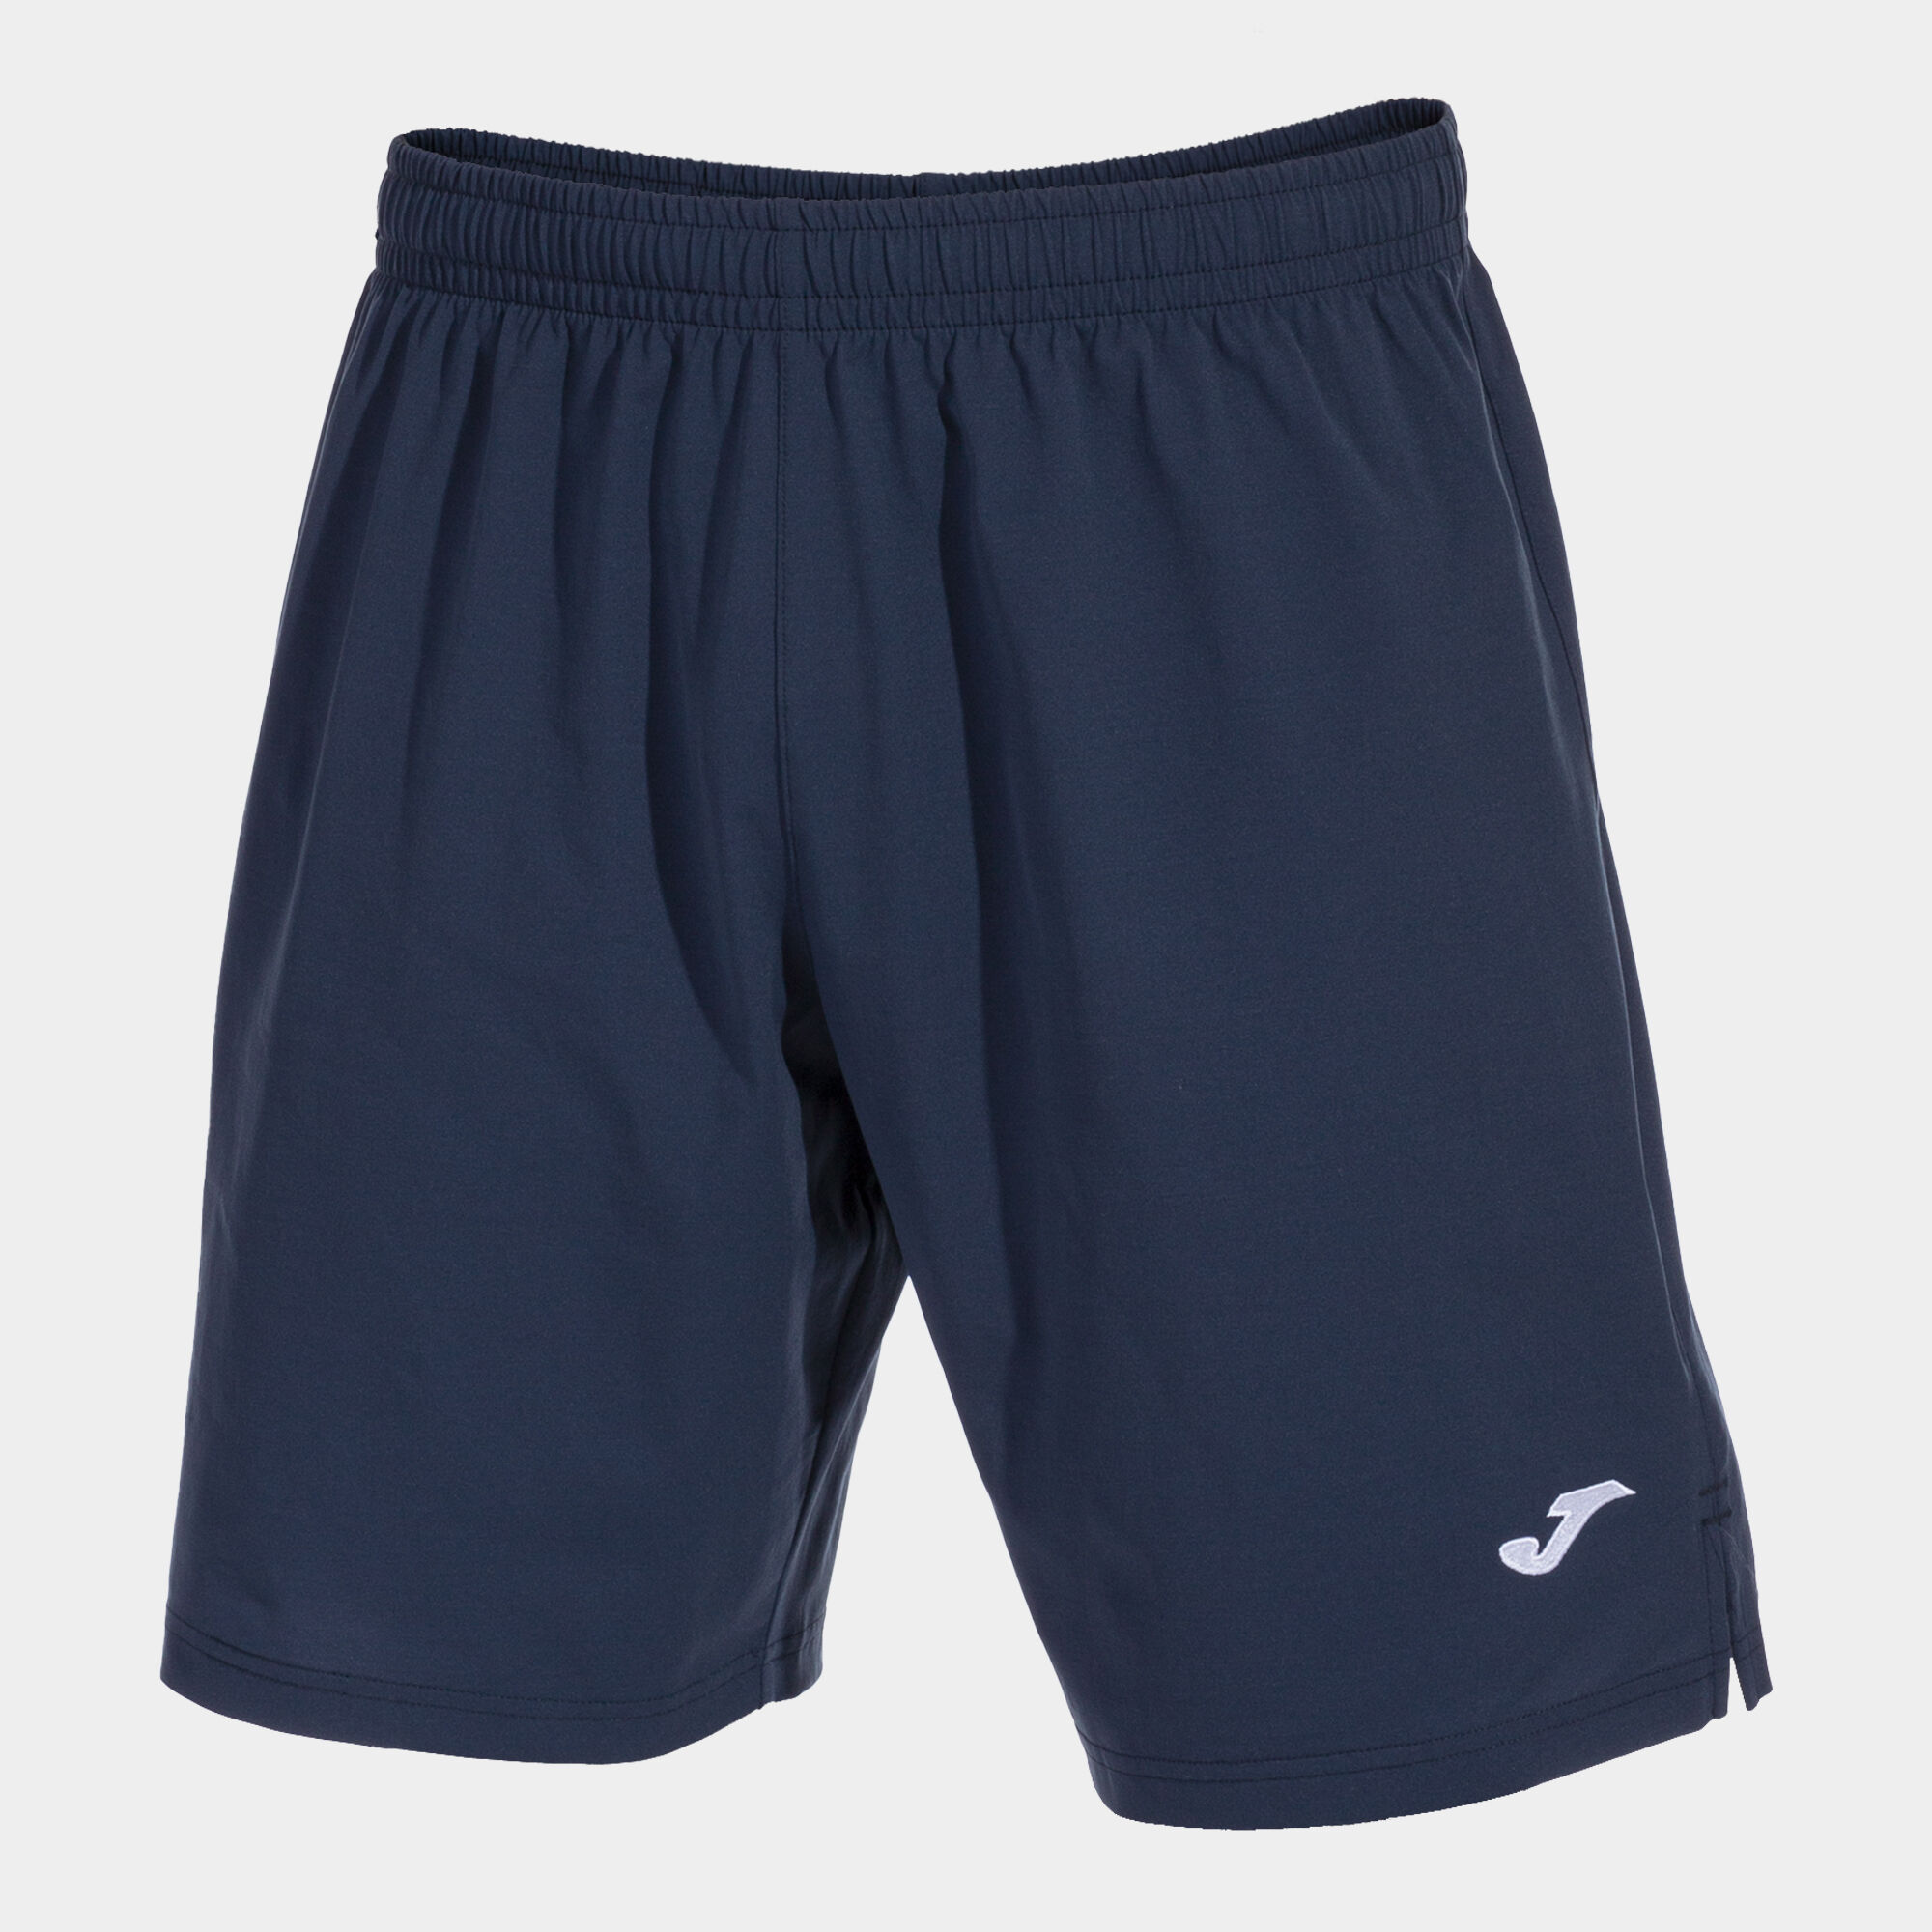 Shorts man Eurocopa III navy blue